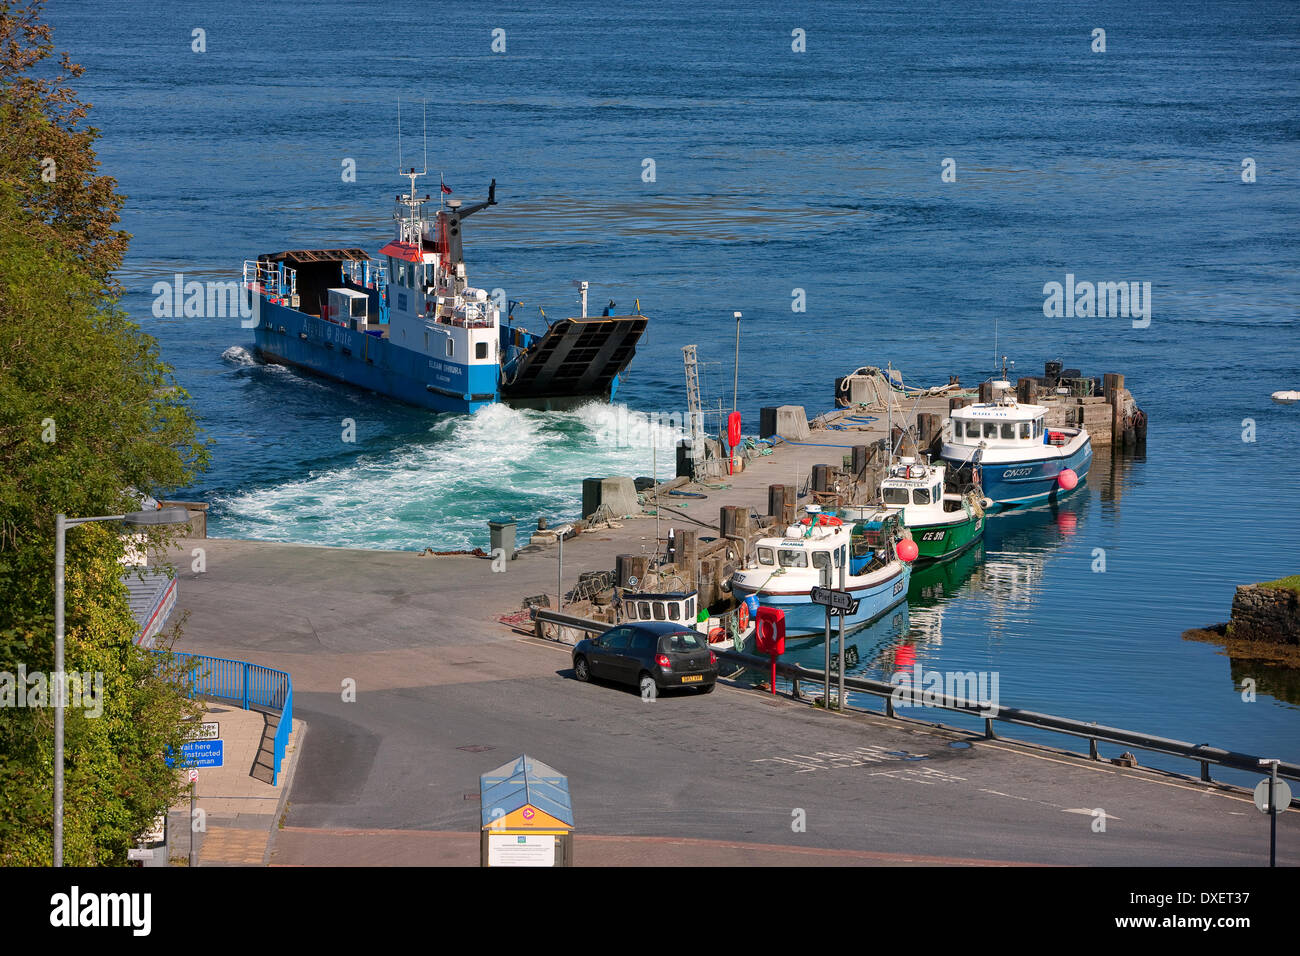 L'île de Jura ferry part port askaig pier.île d'Islay. Banque D'Images